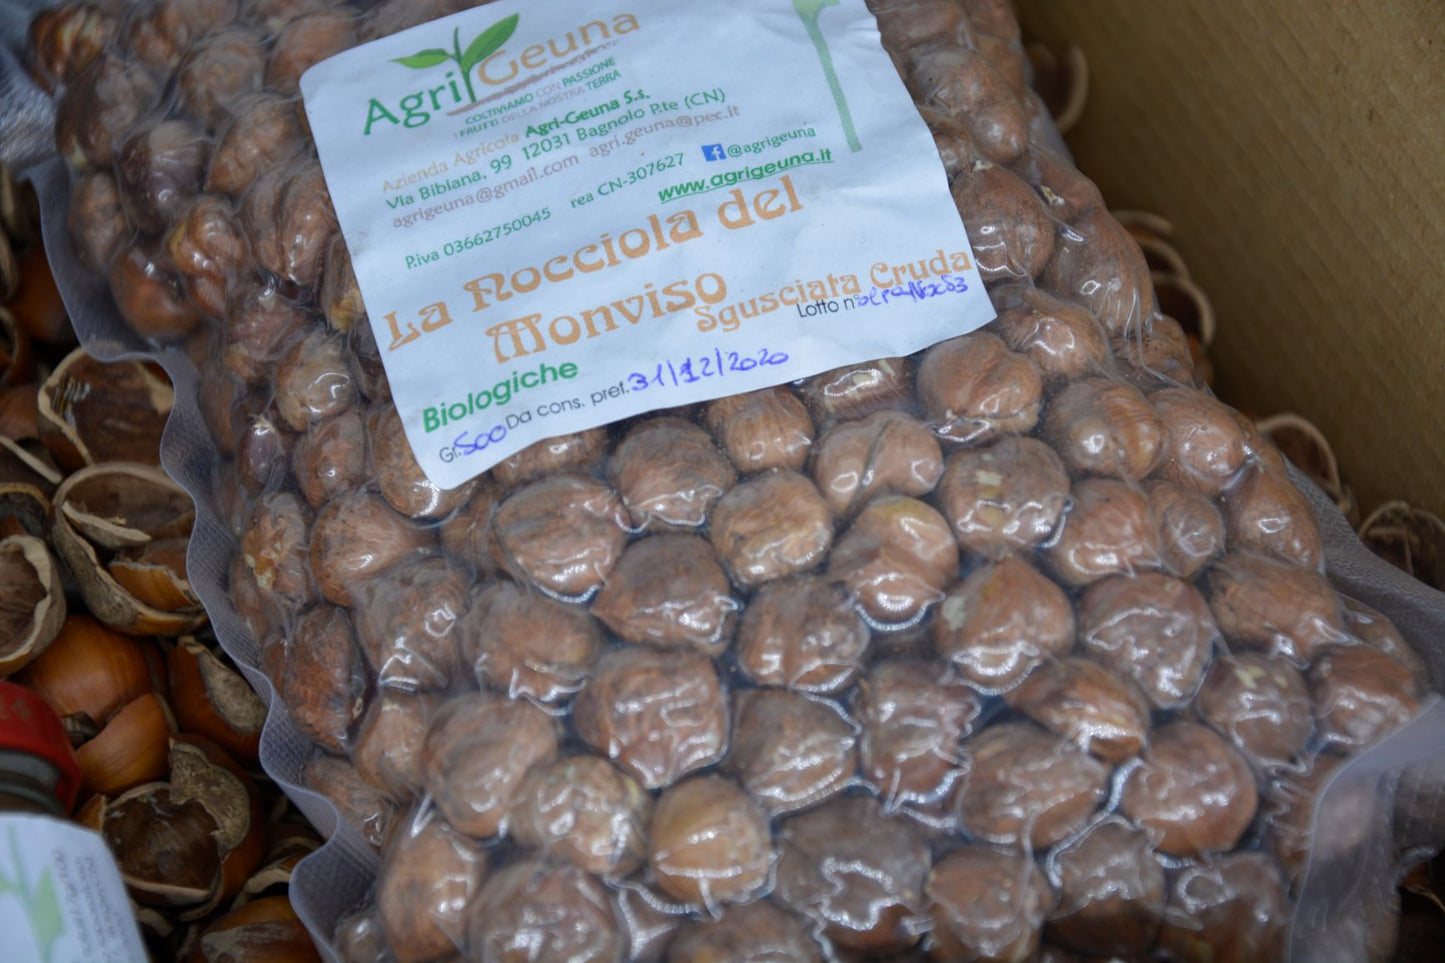 La "Nocciola del Monviso"® - nocciole coltivate da azienda biologica, SGUSCIATE crude SFUSE maggiori di 9kg